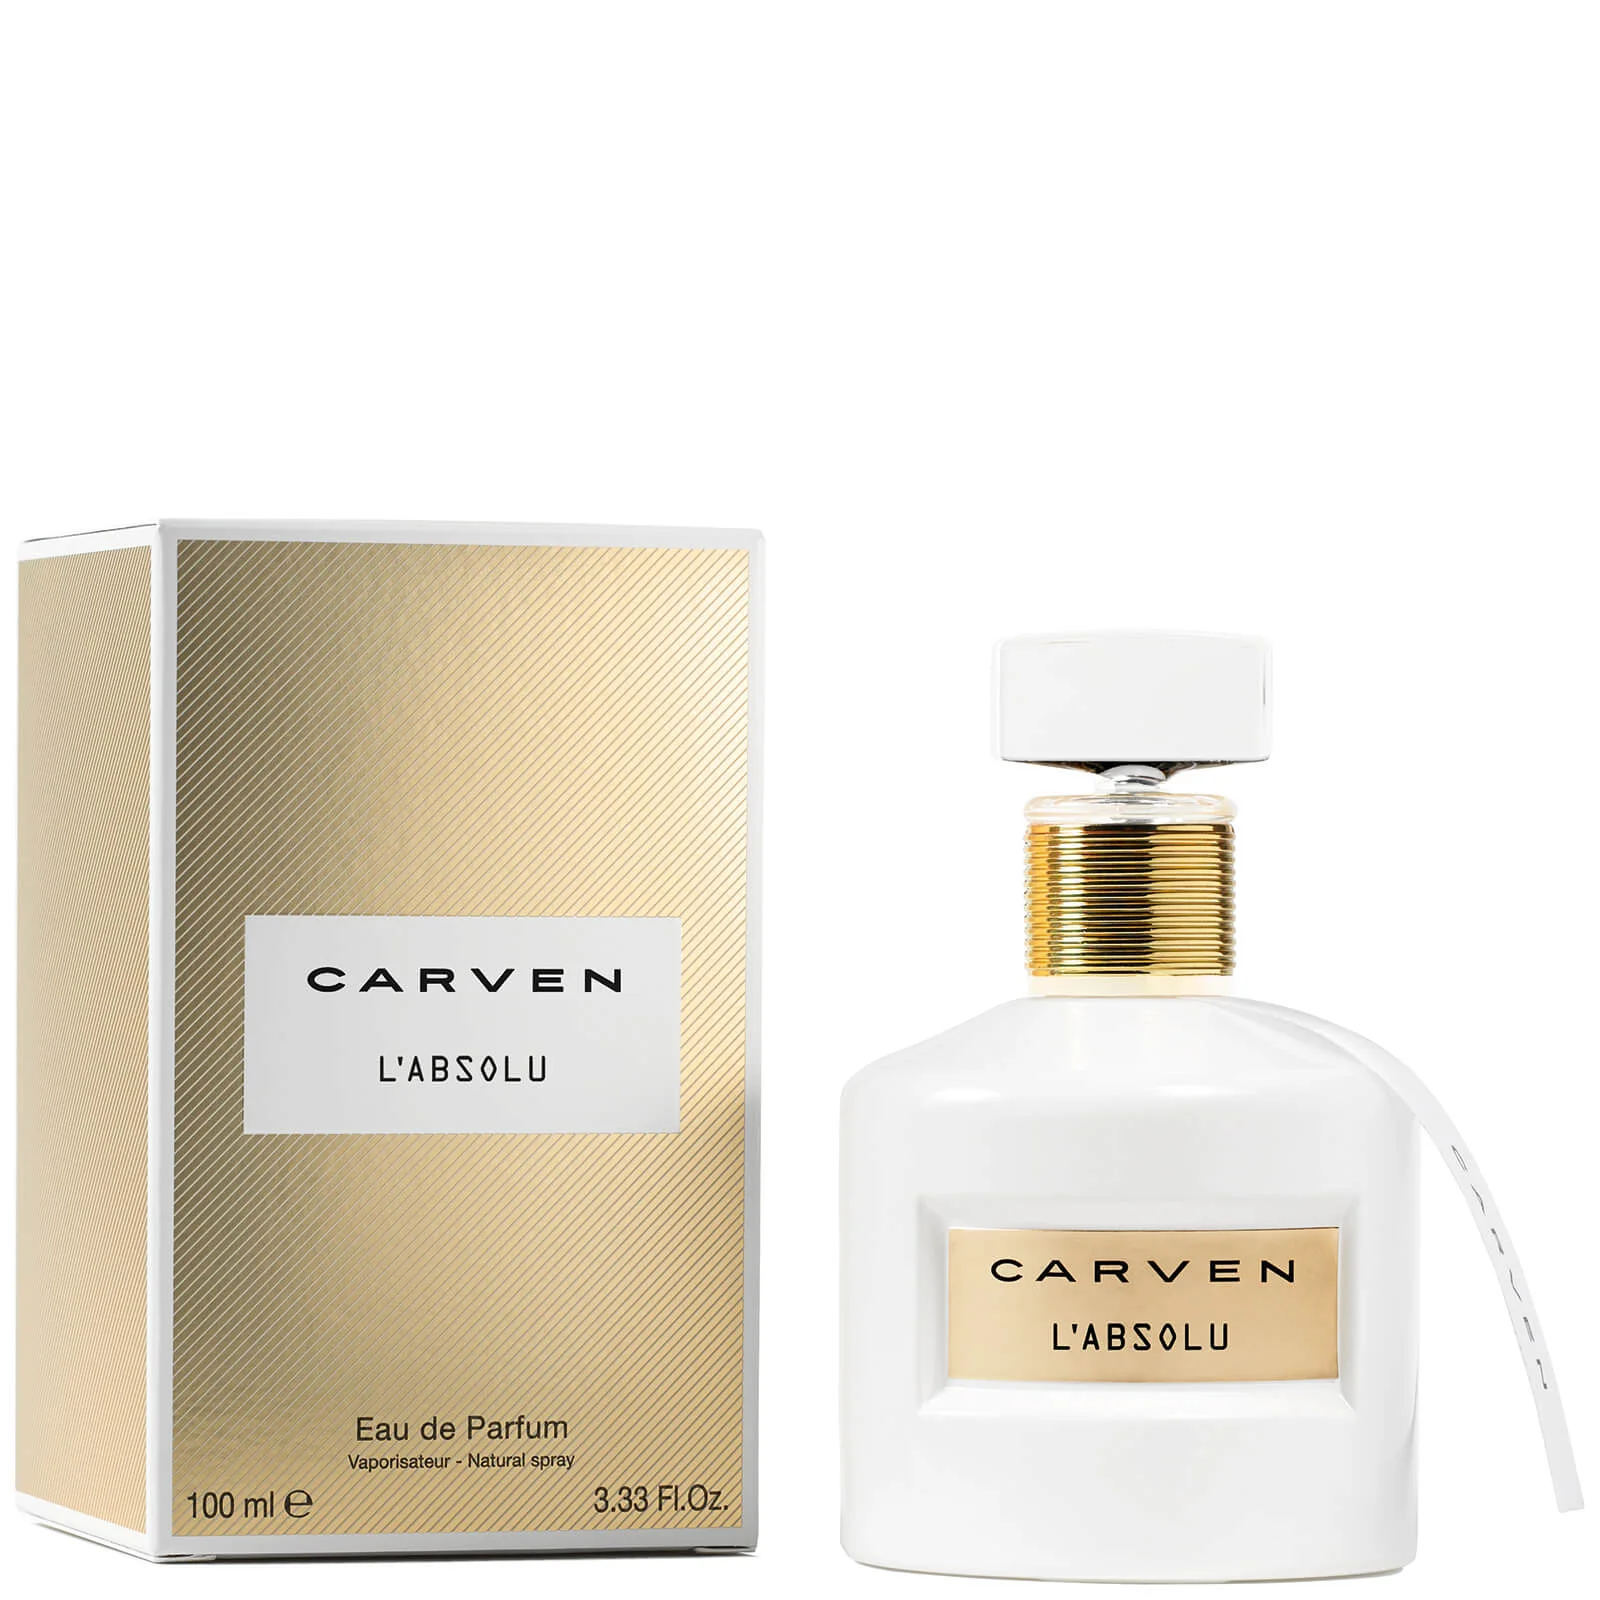 Carven L'Absolu Eau de Parfum (100ml) Image 1